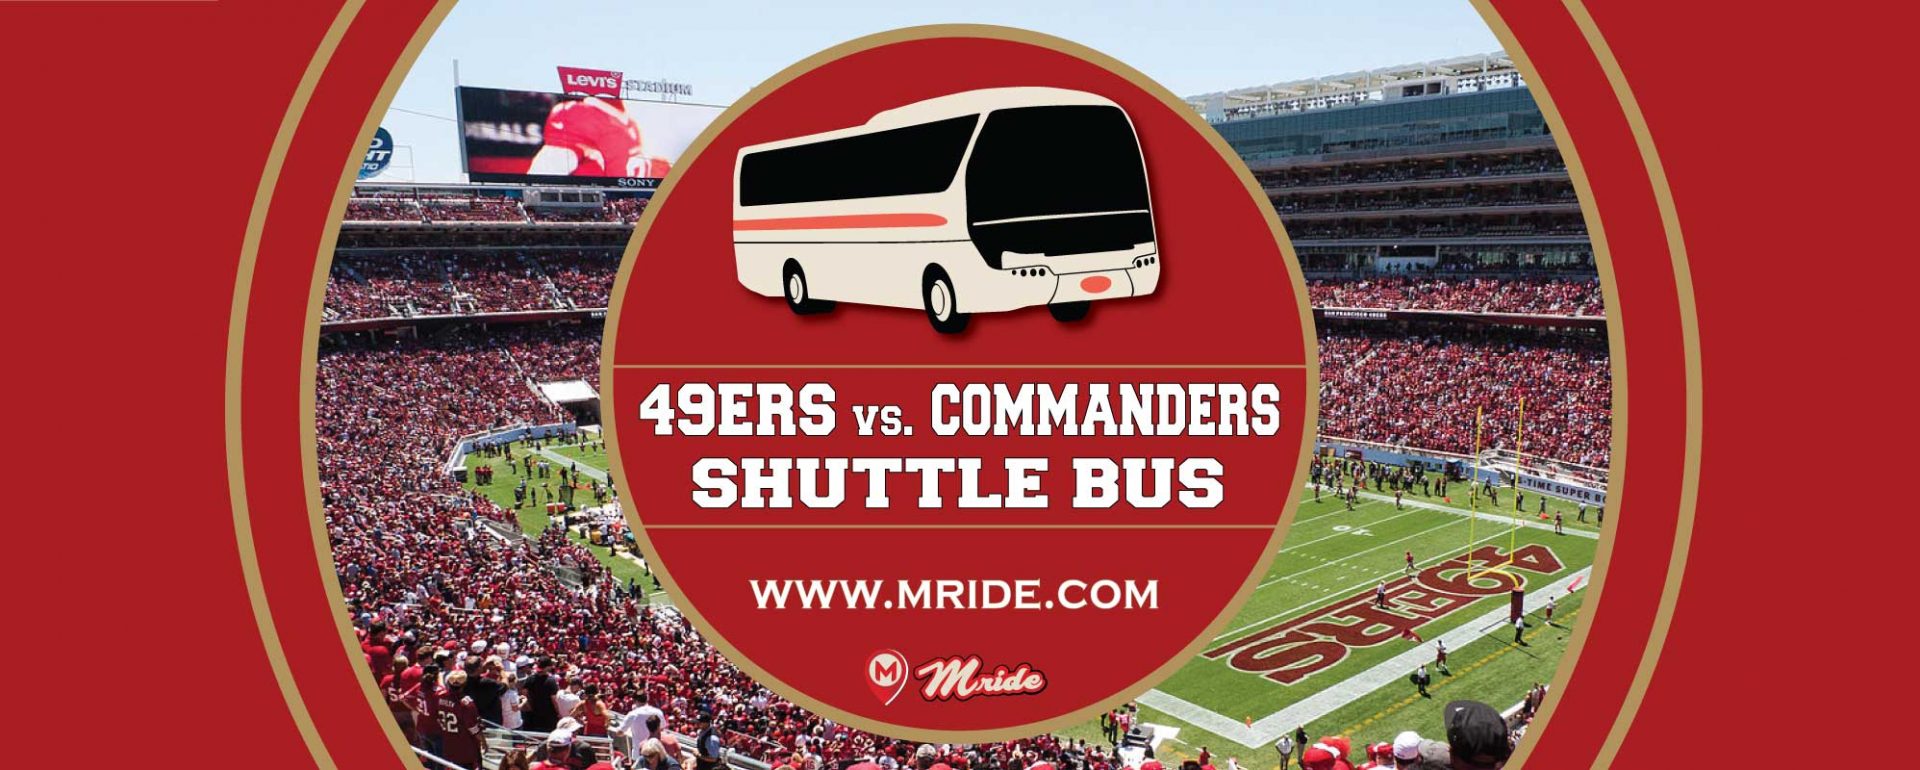 49ers-San-Francisco-Shuttle-Bus-Levis-Stadium-Commanders